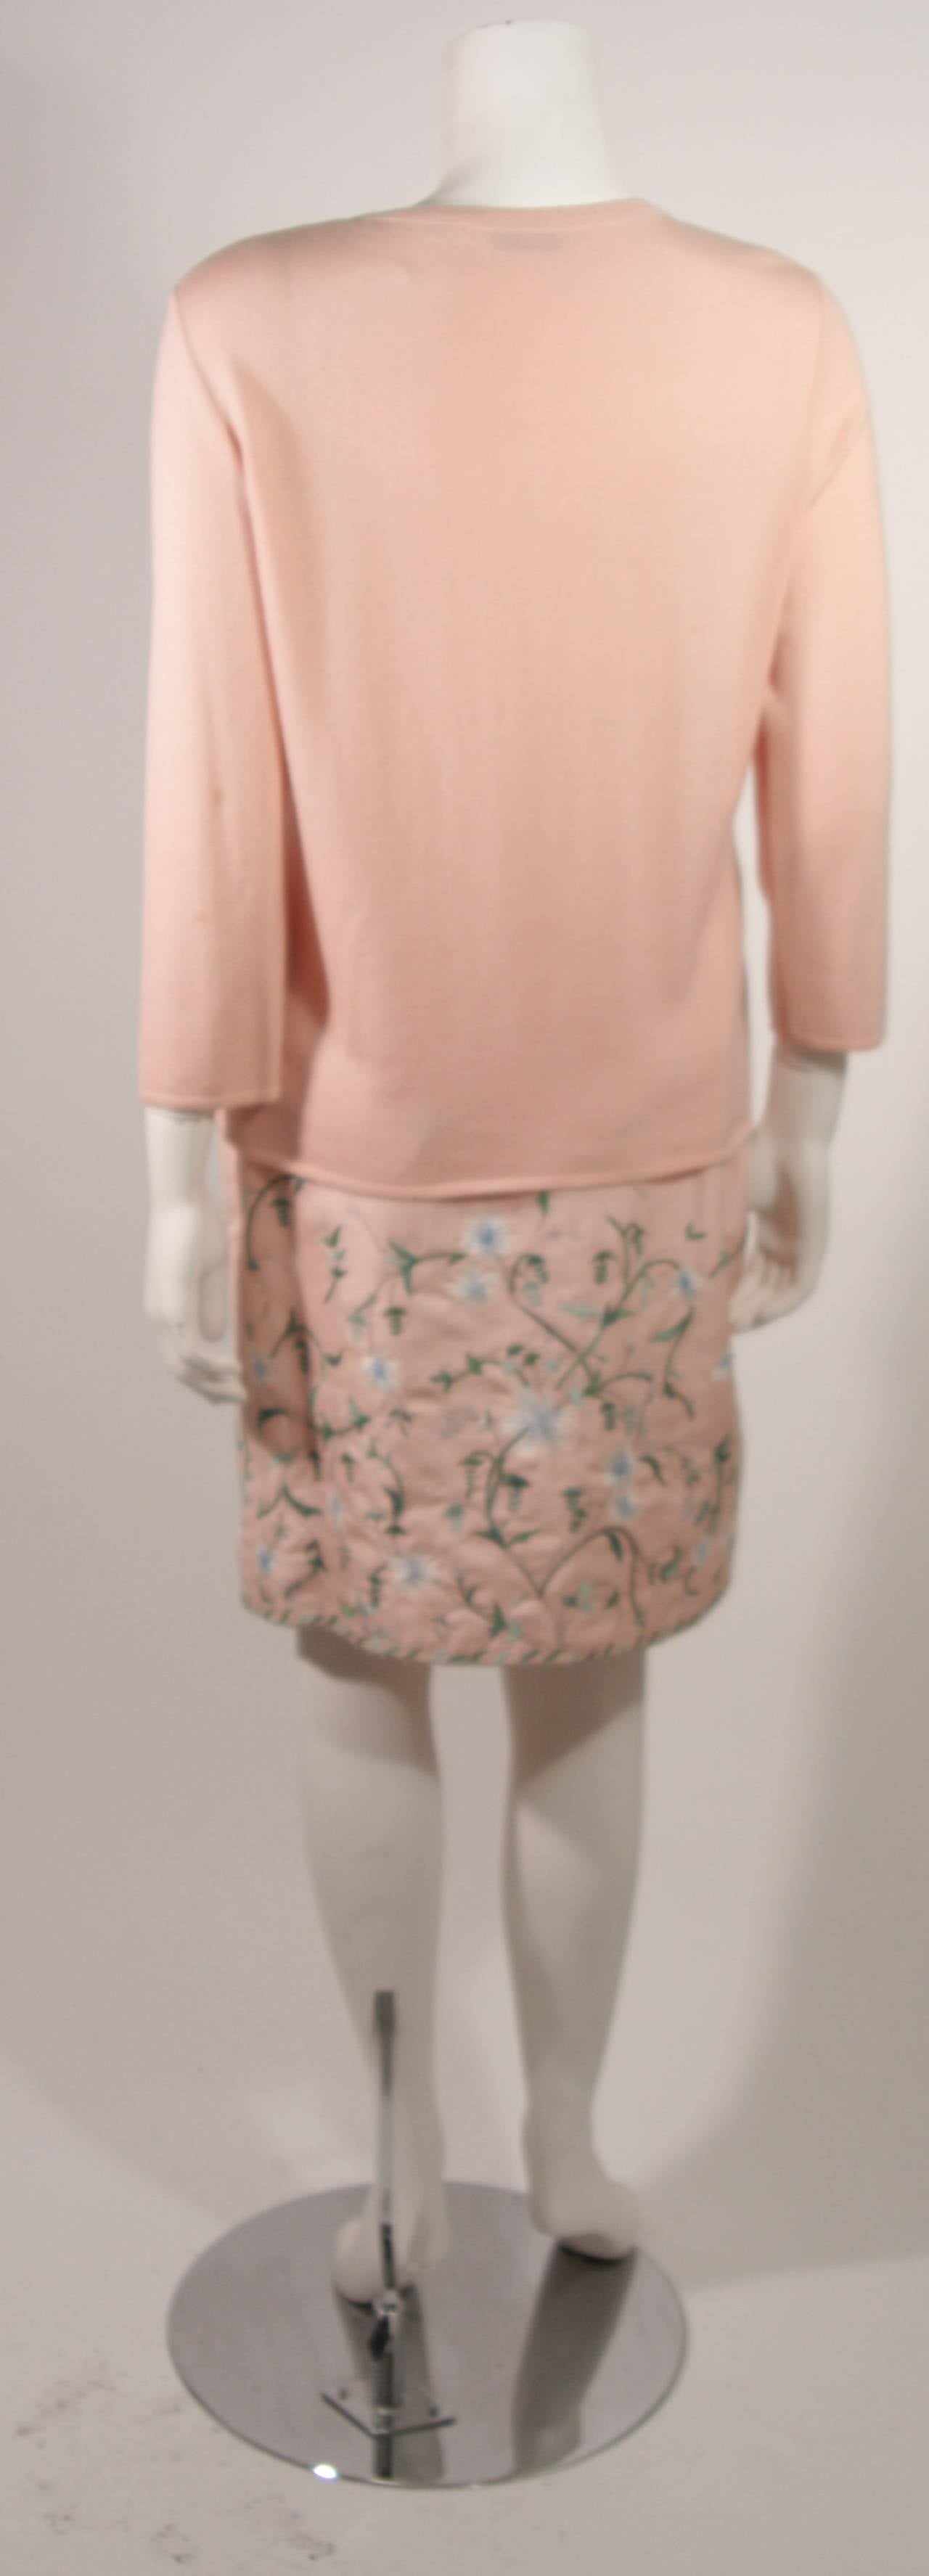 Beige Oscar De La Renta Pink Floral Embroidered Skirt and Cardigan Set Size Large For Sale